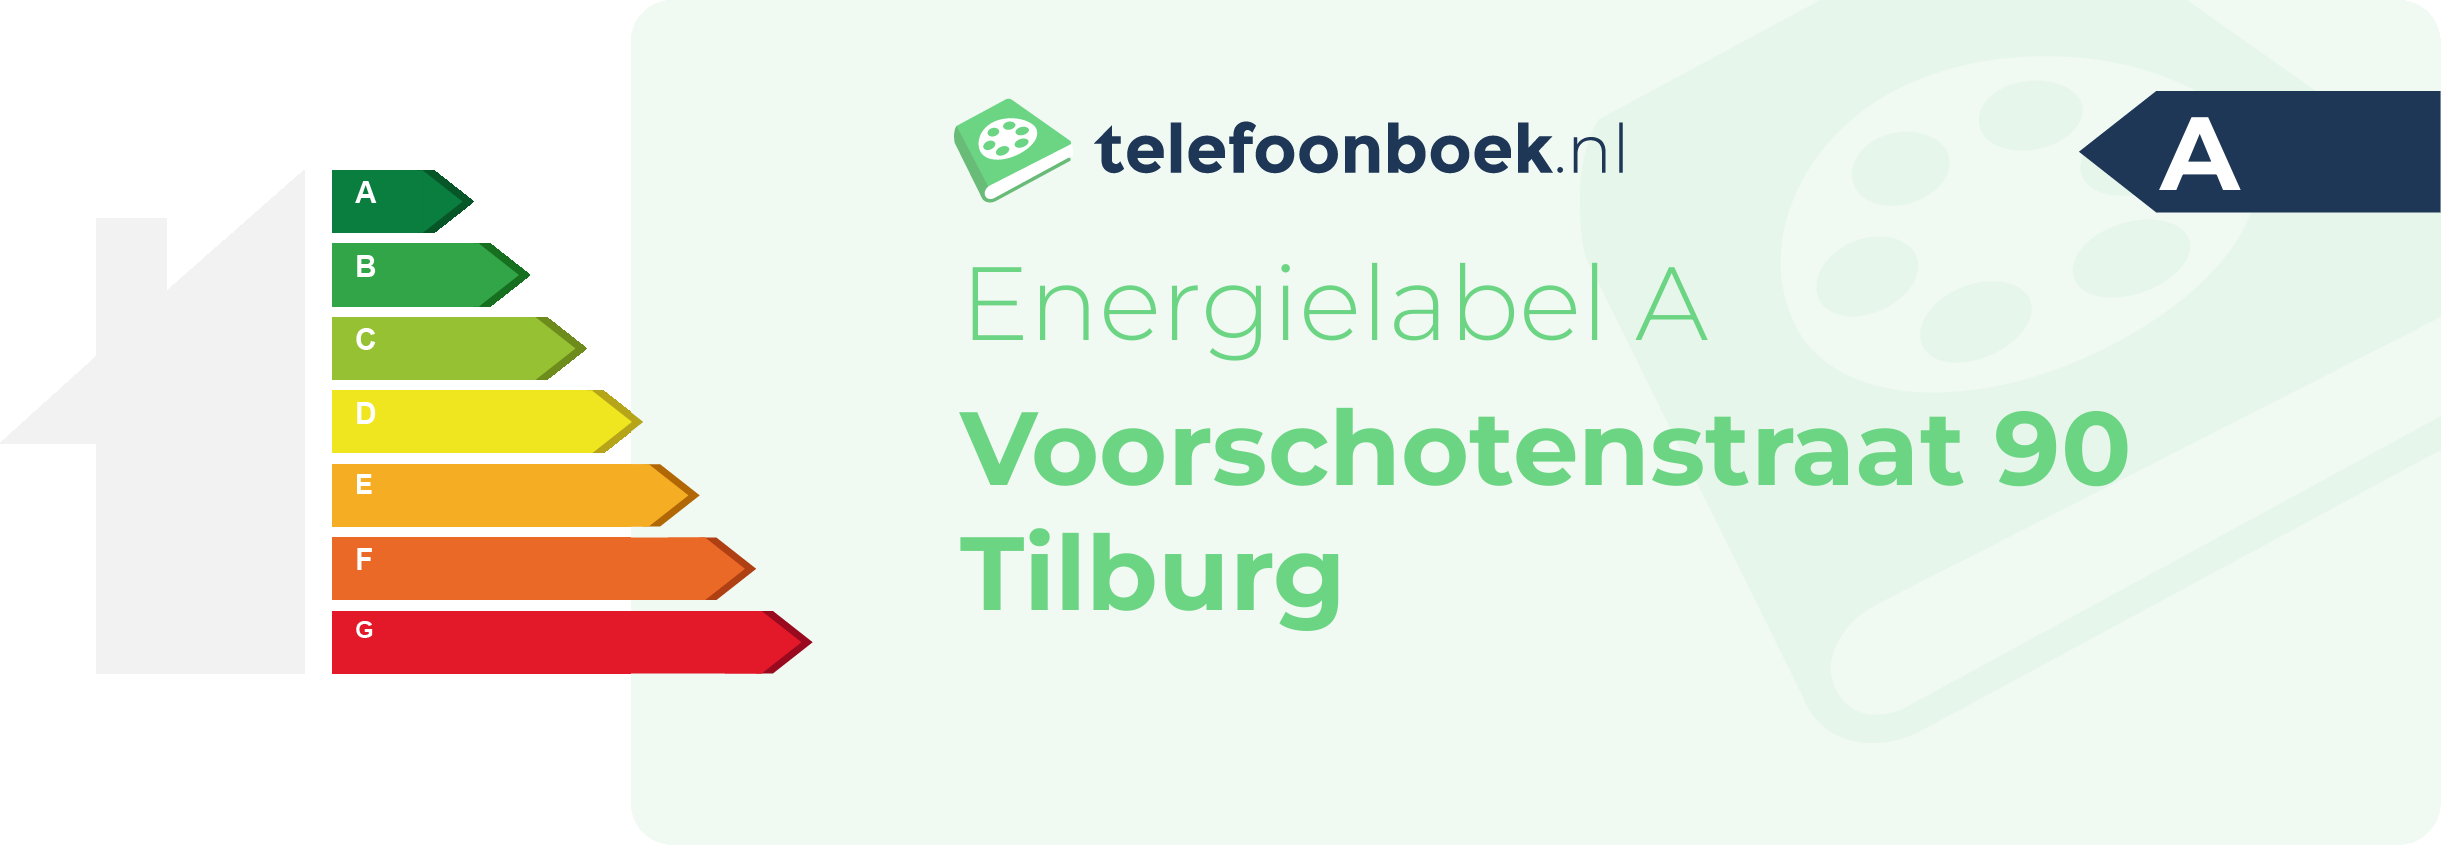 Energielabel Voorschotenstraat 90 Tilburg